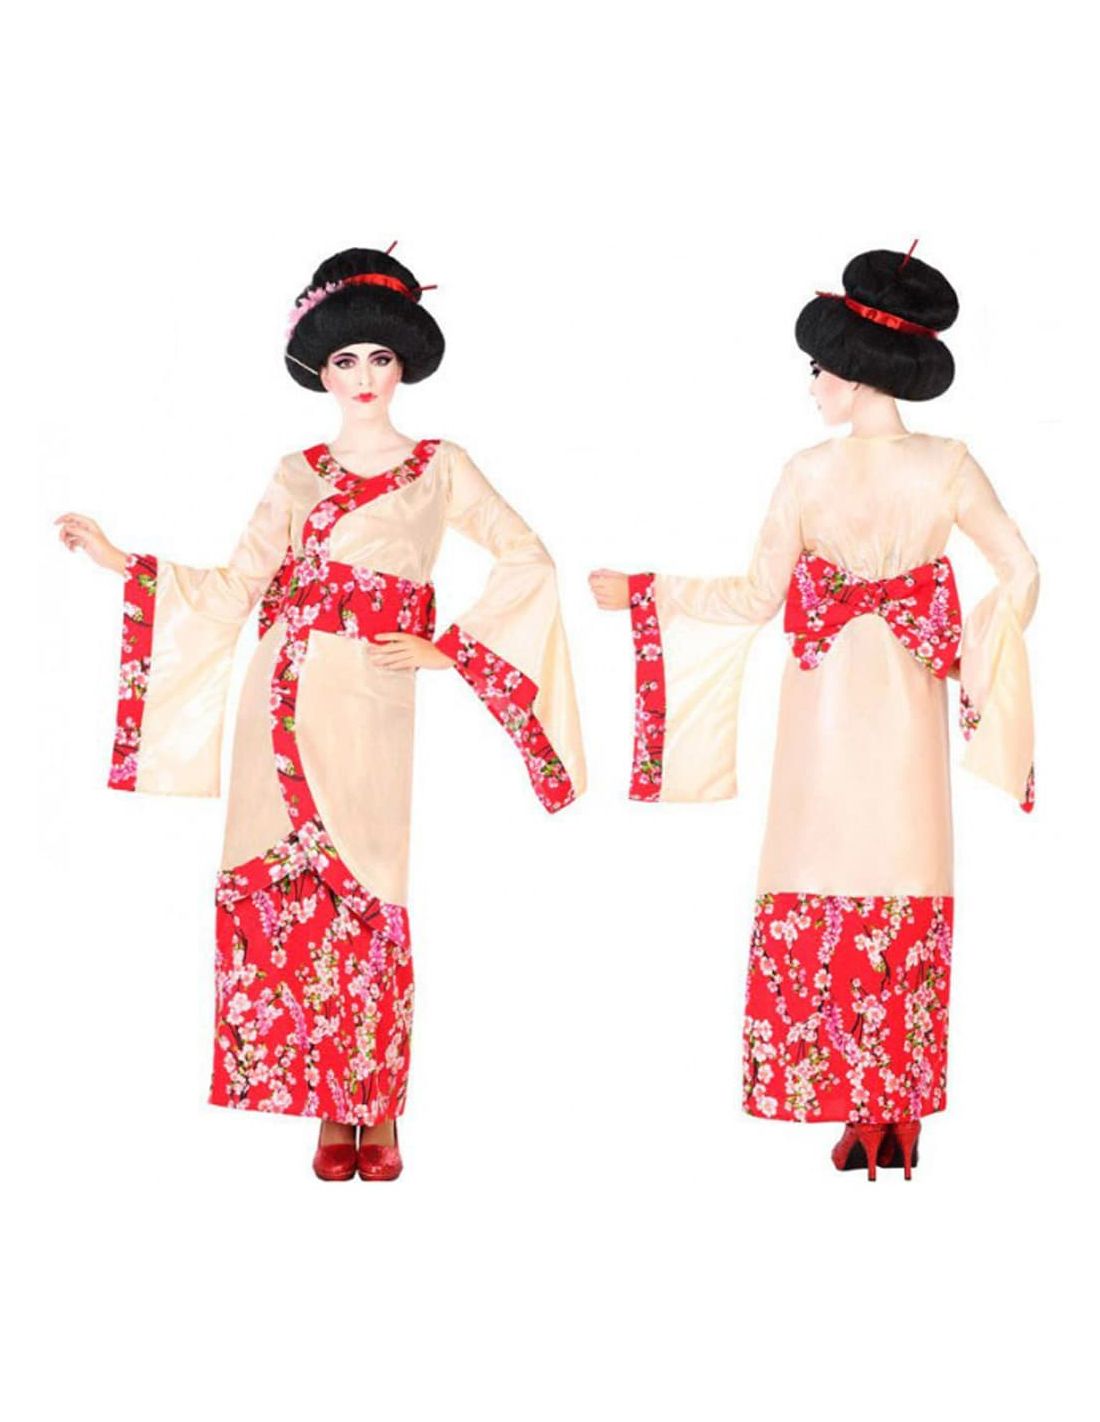 Disfraz geisha mujer: Disfraces adultos,y disfraces originales